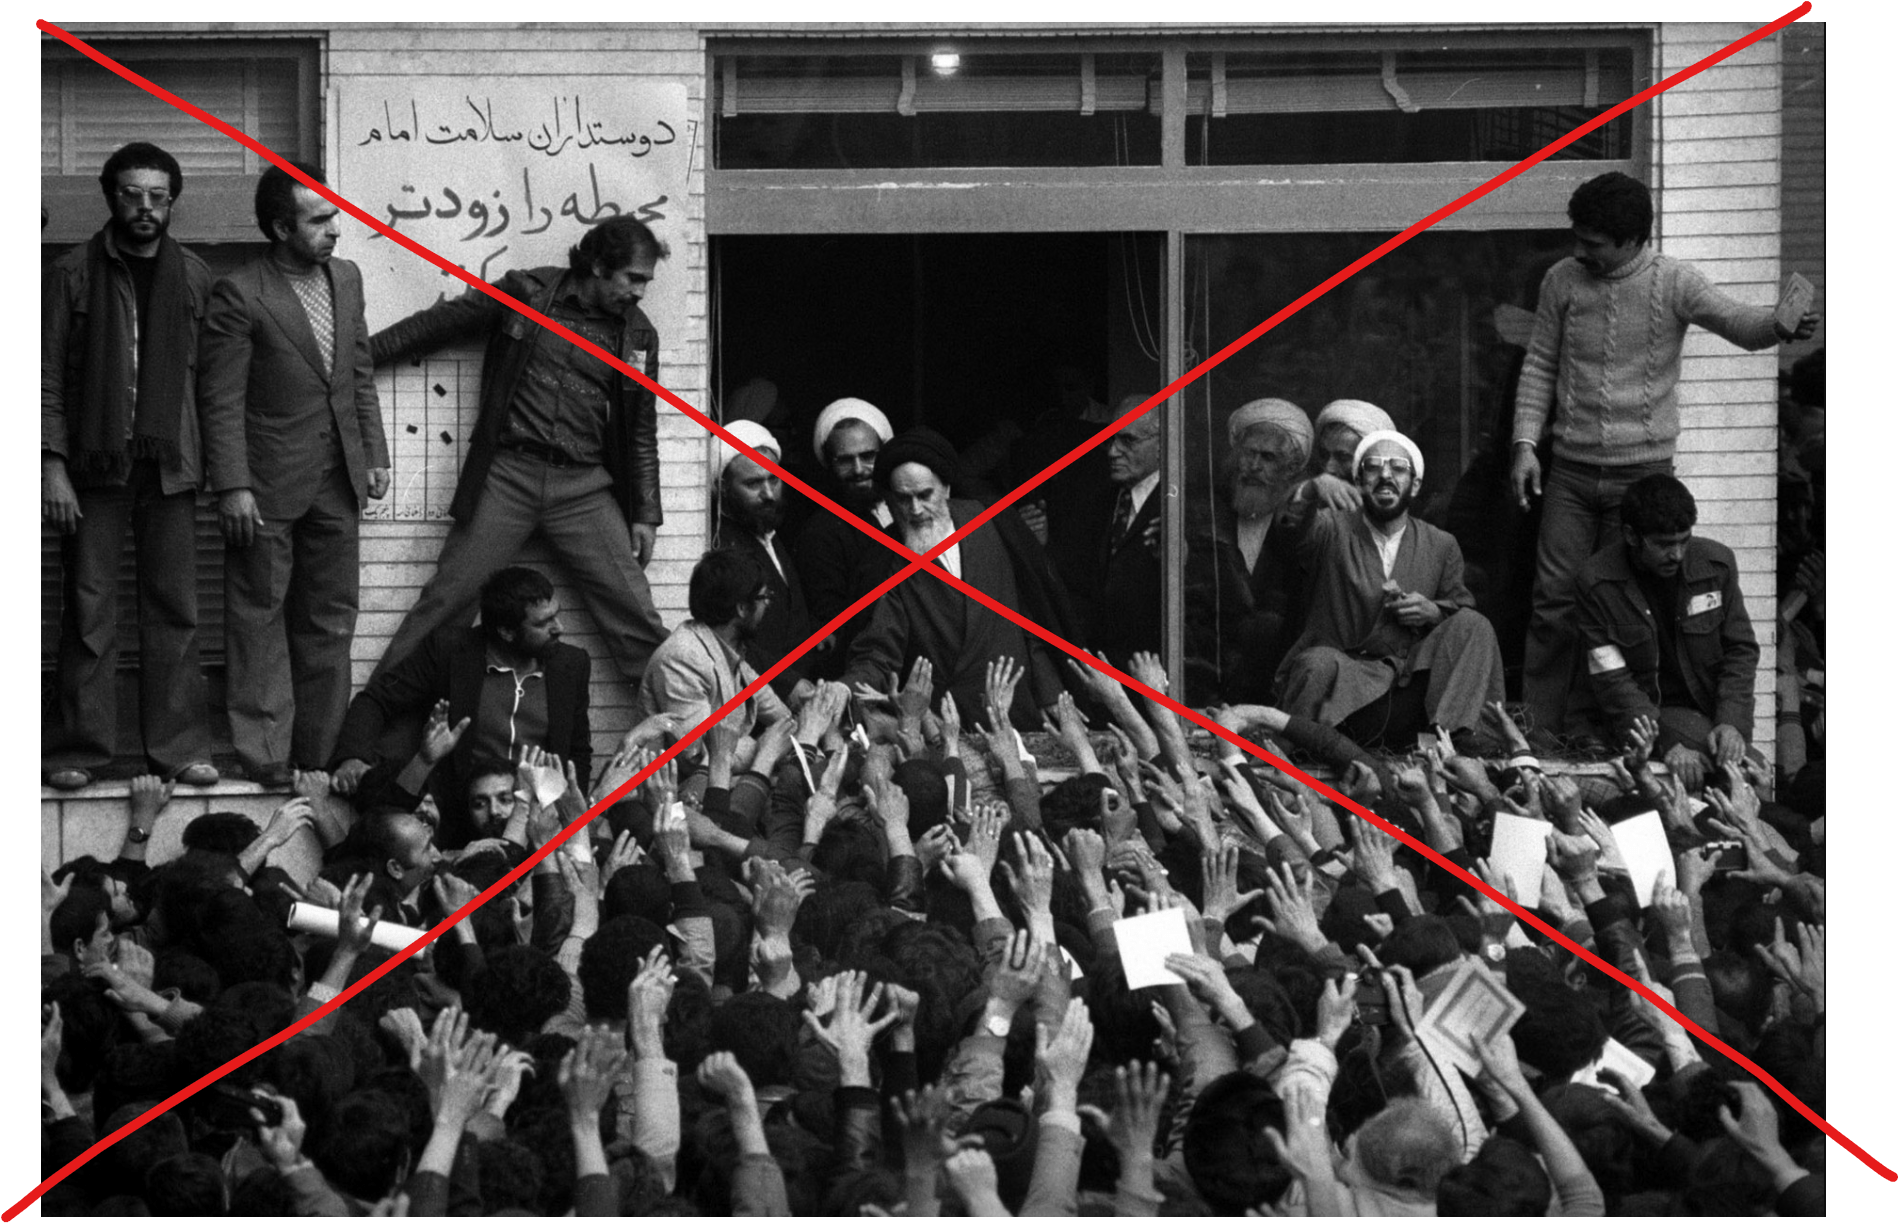 ۱۱۲ چهره انقلاب ۵۷ دست از پا دراز تر از عملکرد جمهوری اسلامی ابراز شرمساری کردند